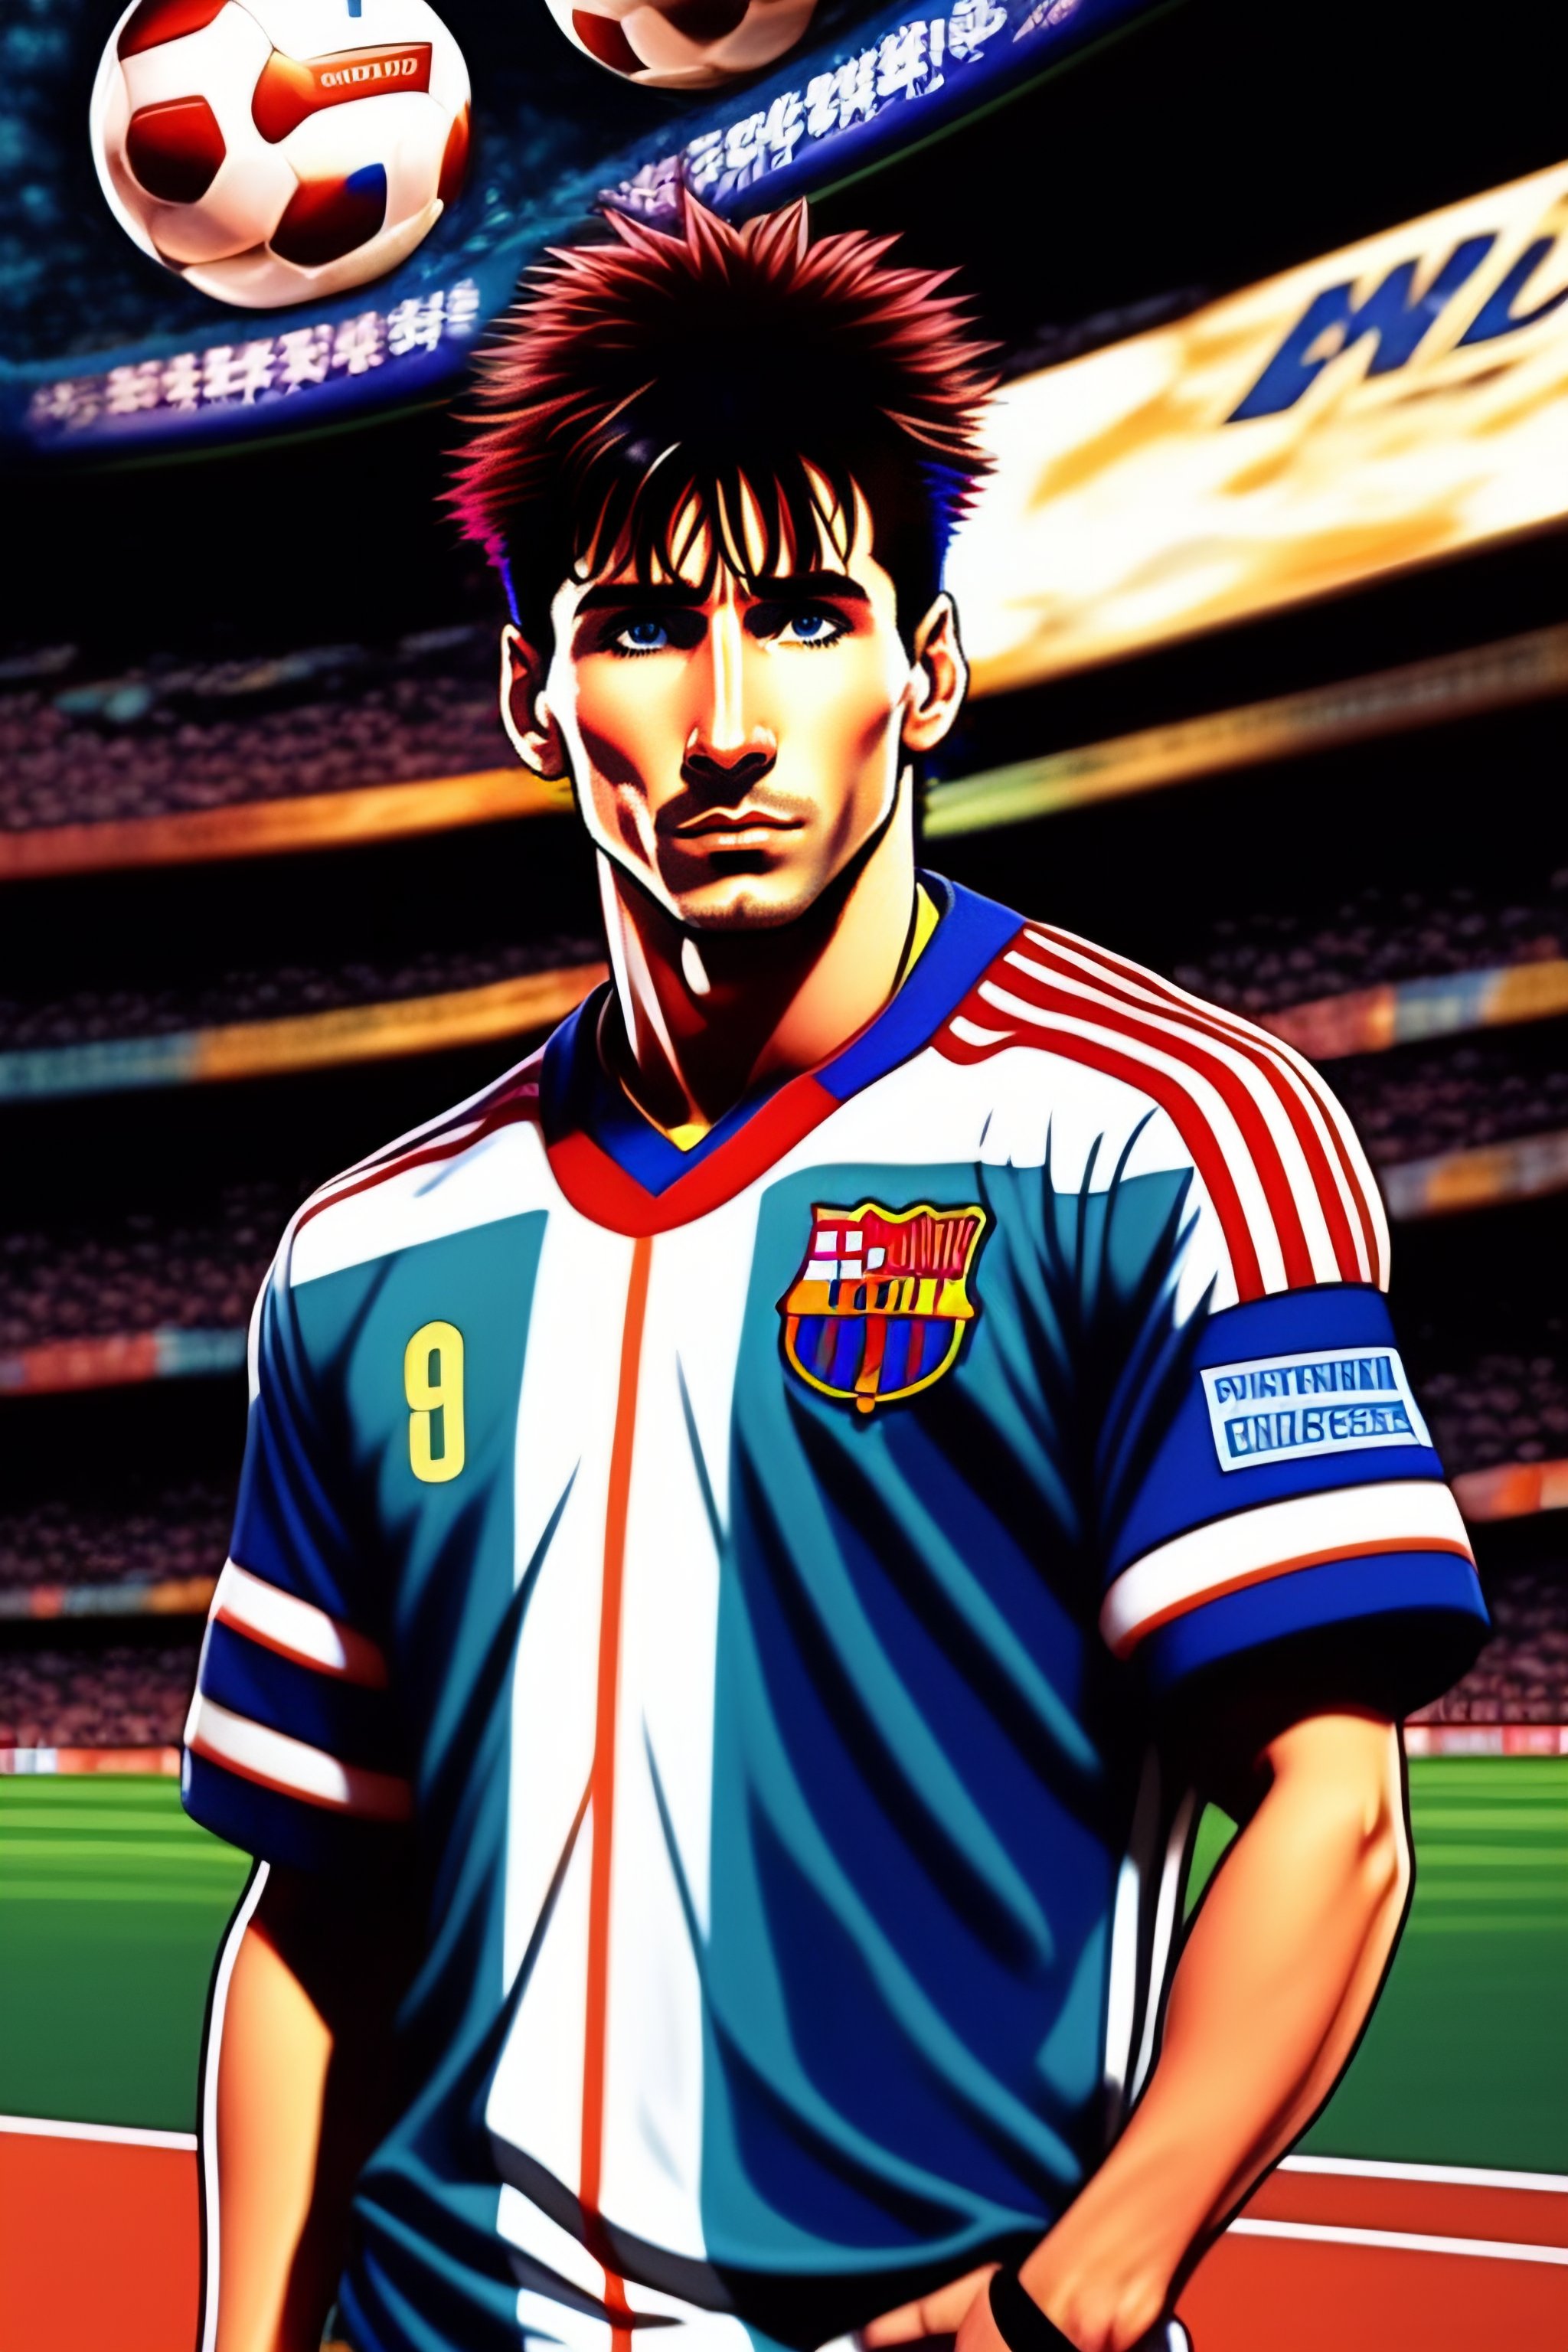 Hãy ngắm nhìn hình nền Messi vintage và cảm nhận sự độc đáo của hình ảnh này. Hình ảnh với tông màu cổ điển sẽ mang lại cho bạn không khí bình yên và lãng mạn khi dùng làm hình nền.